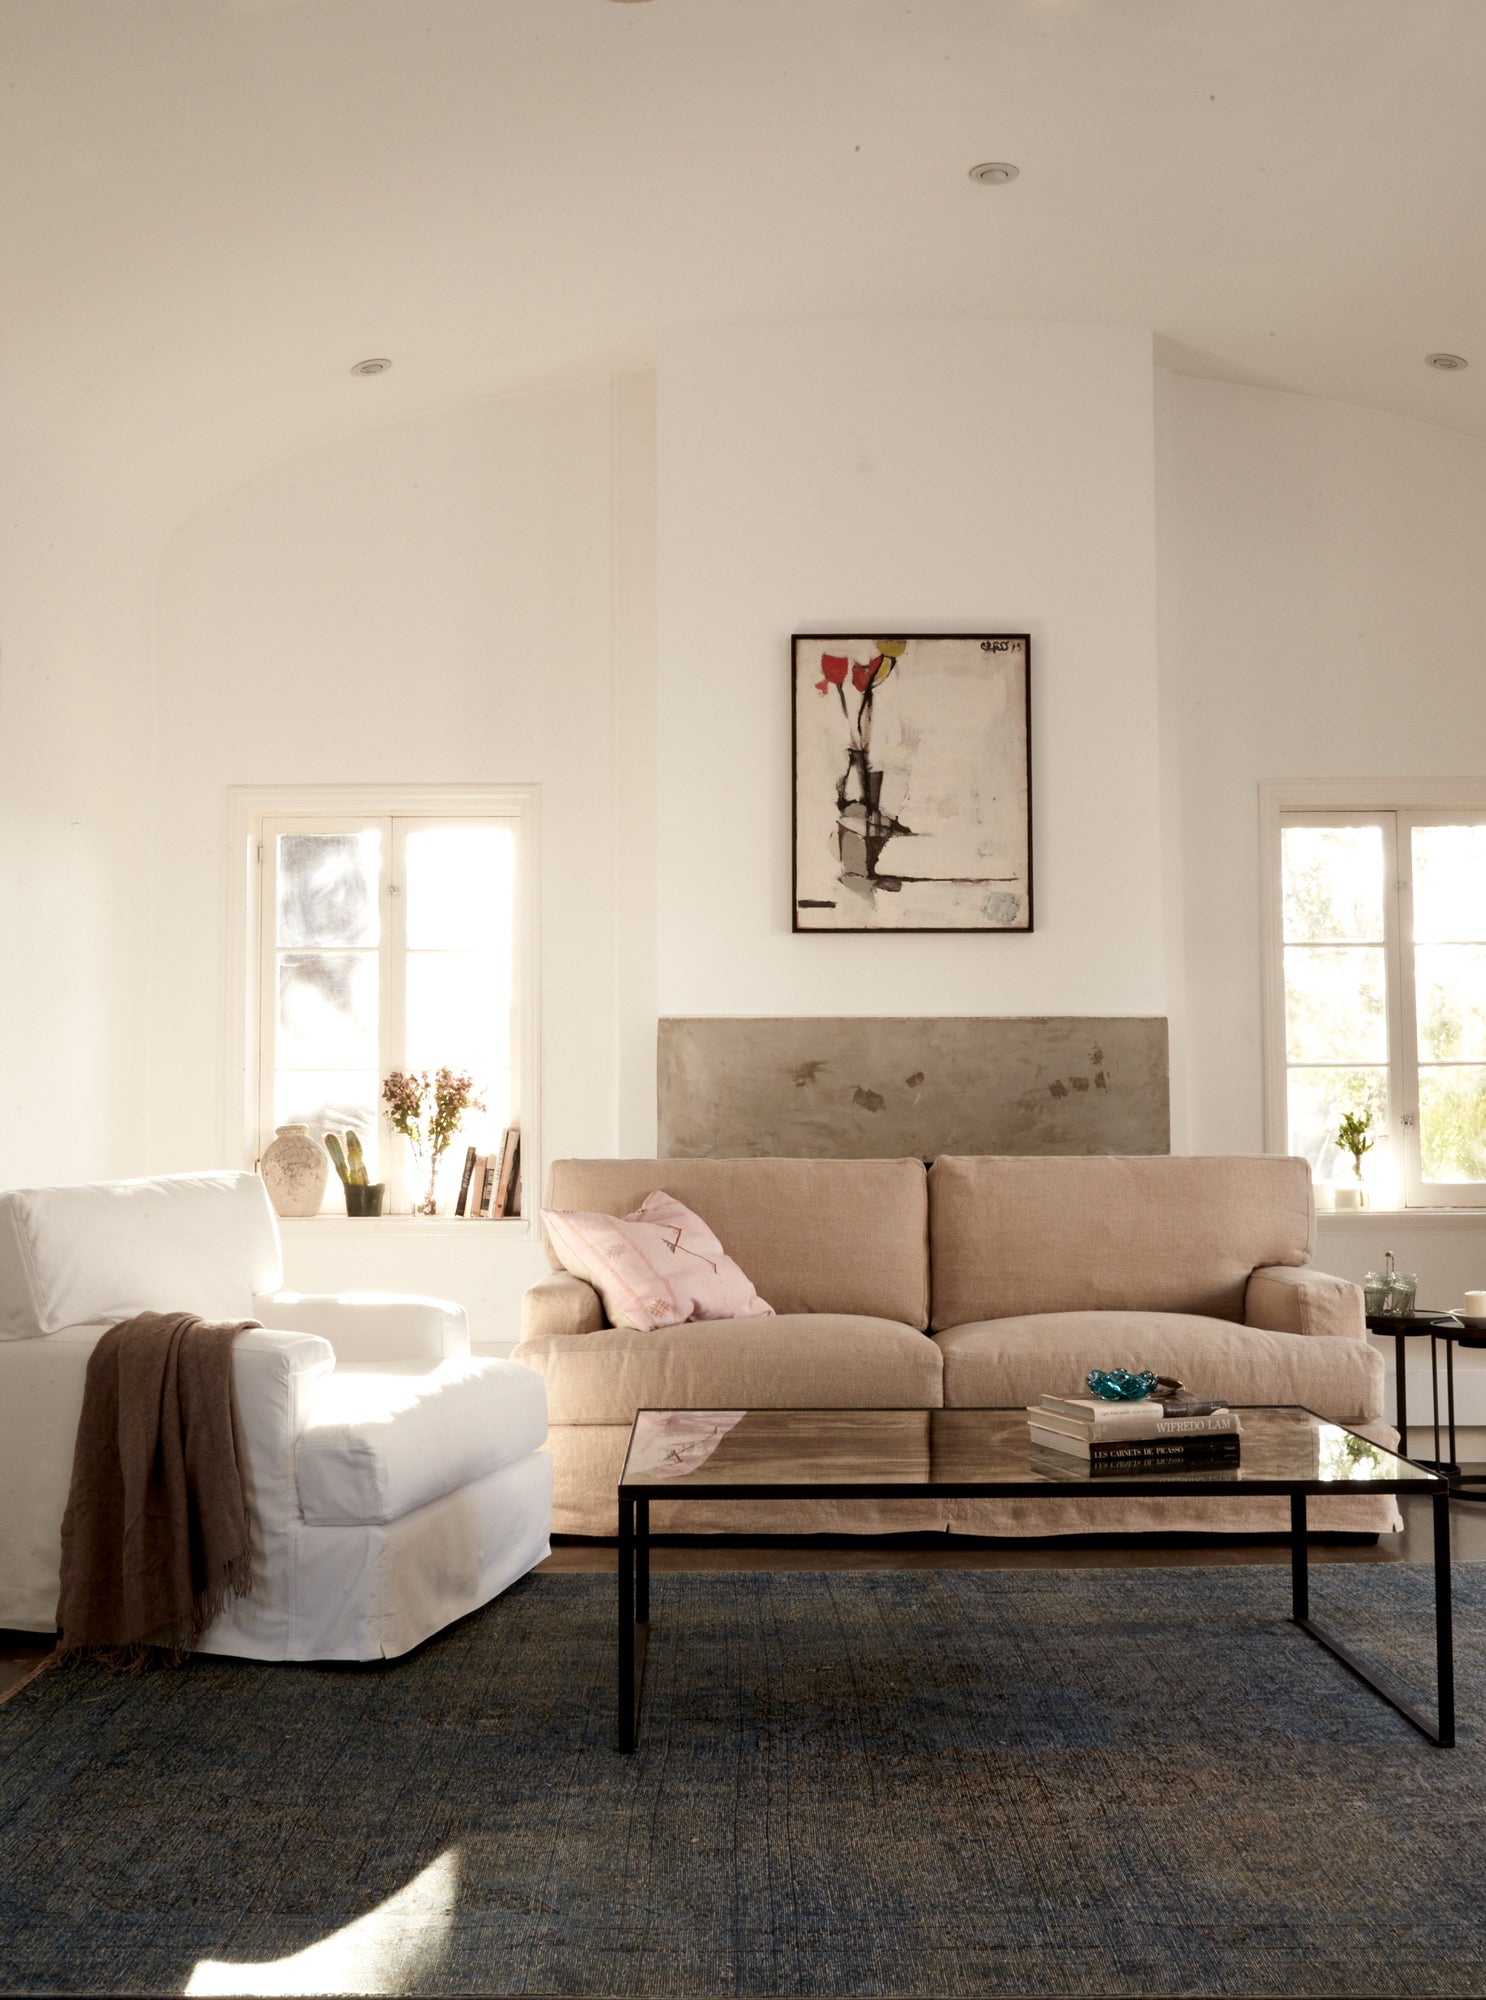  白色牛仔布椅子，旁边是浅色沙发和玻璃咖啡桌. 背景是白色的墙壁和挂在墙上的一幅画. 